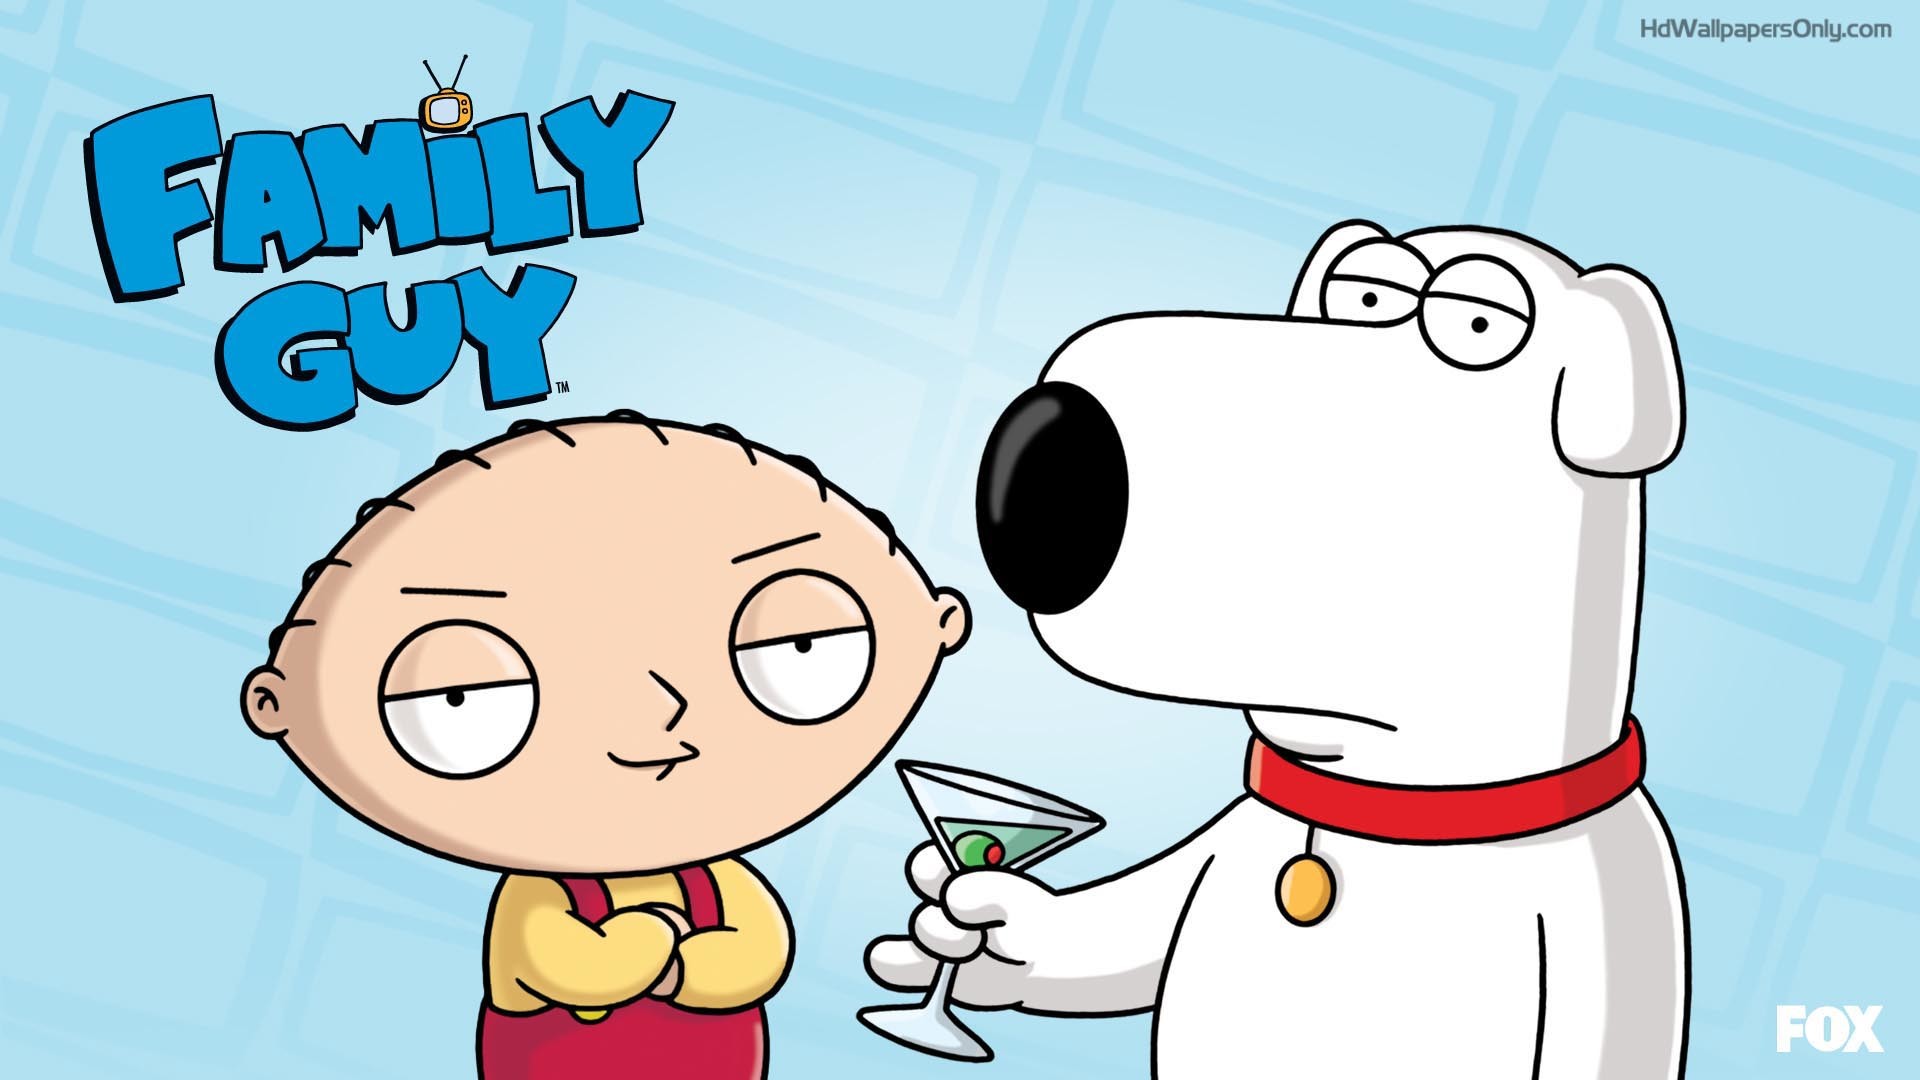 HD Family Guy Wallpapers  PixelsTalkNet